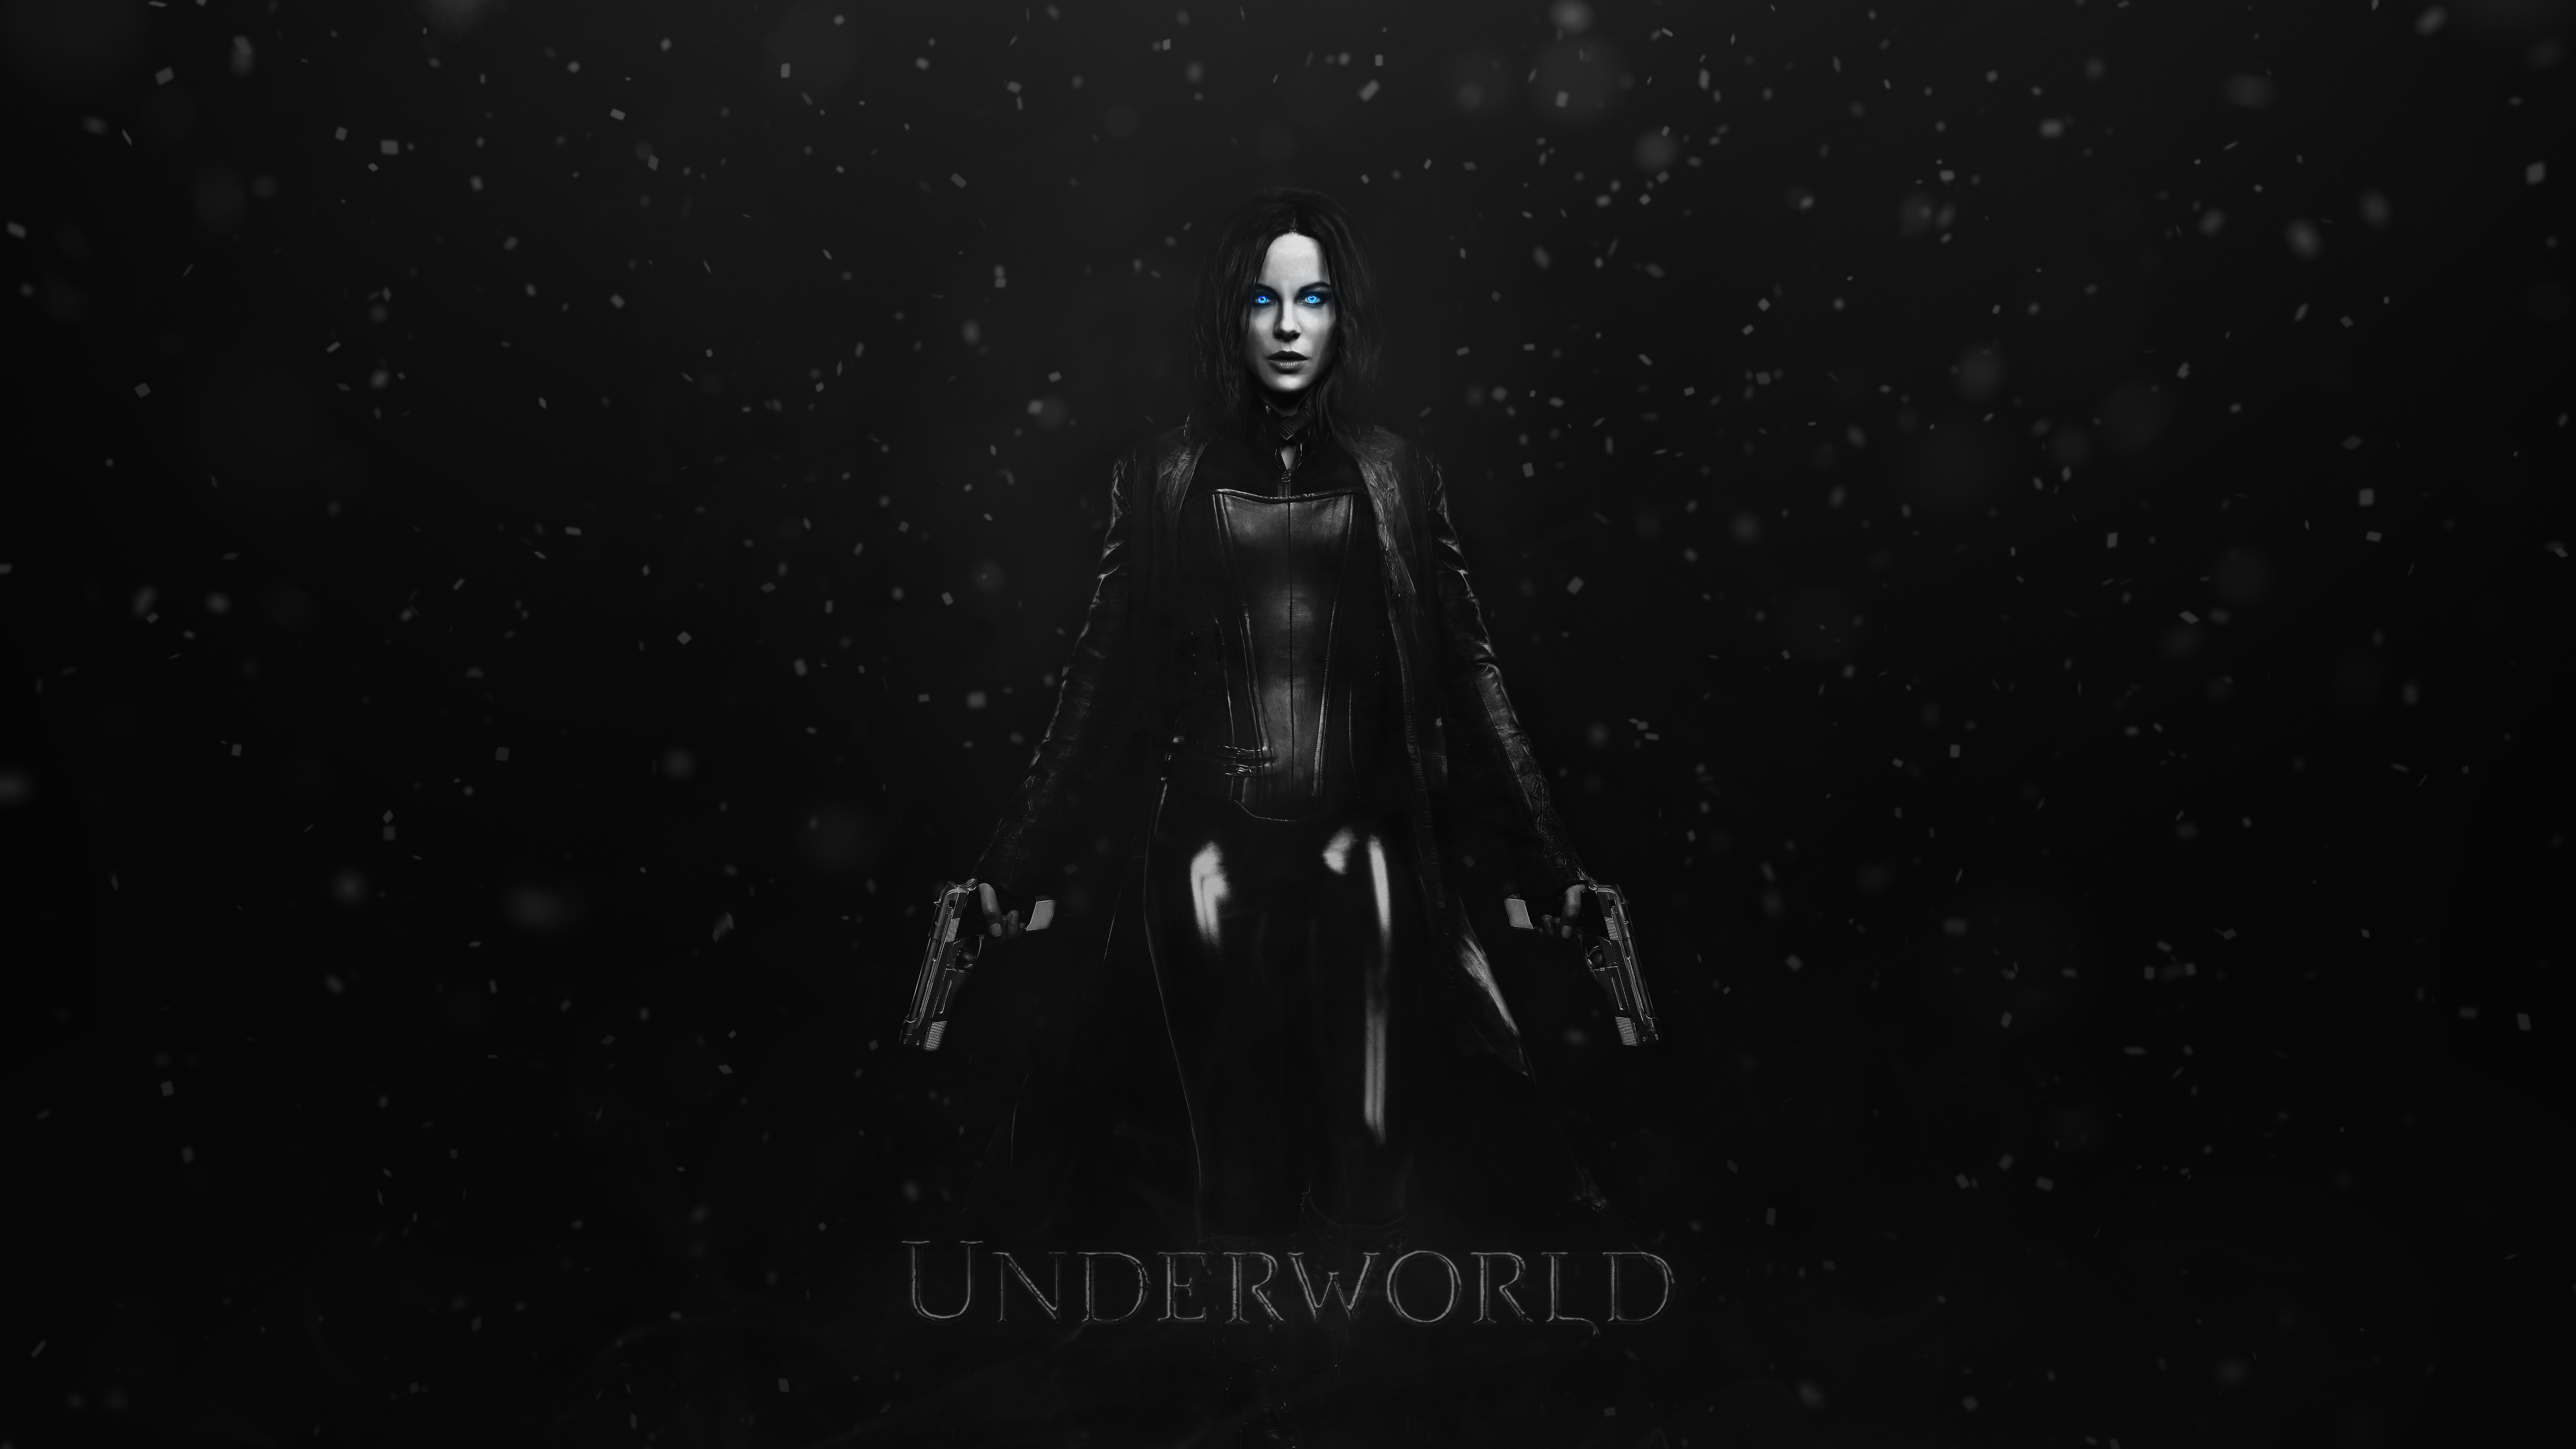 Selene Underworld 5K7824017979 - Selene Underworld 5K - Underworld, Selene, Ant